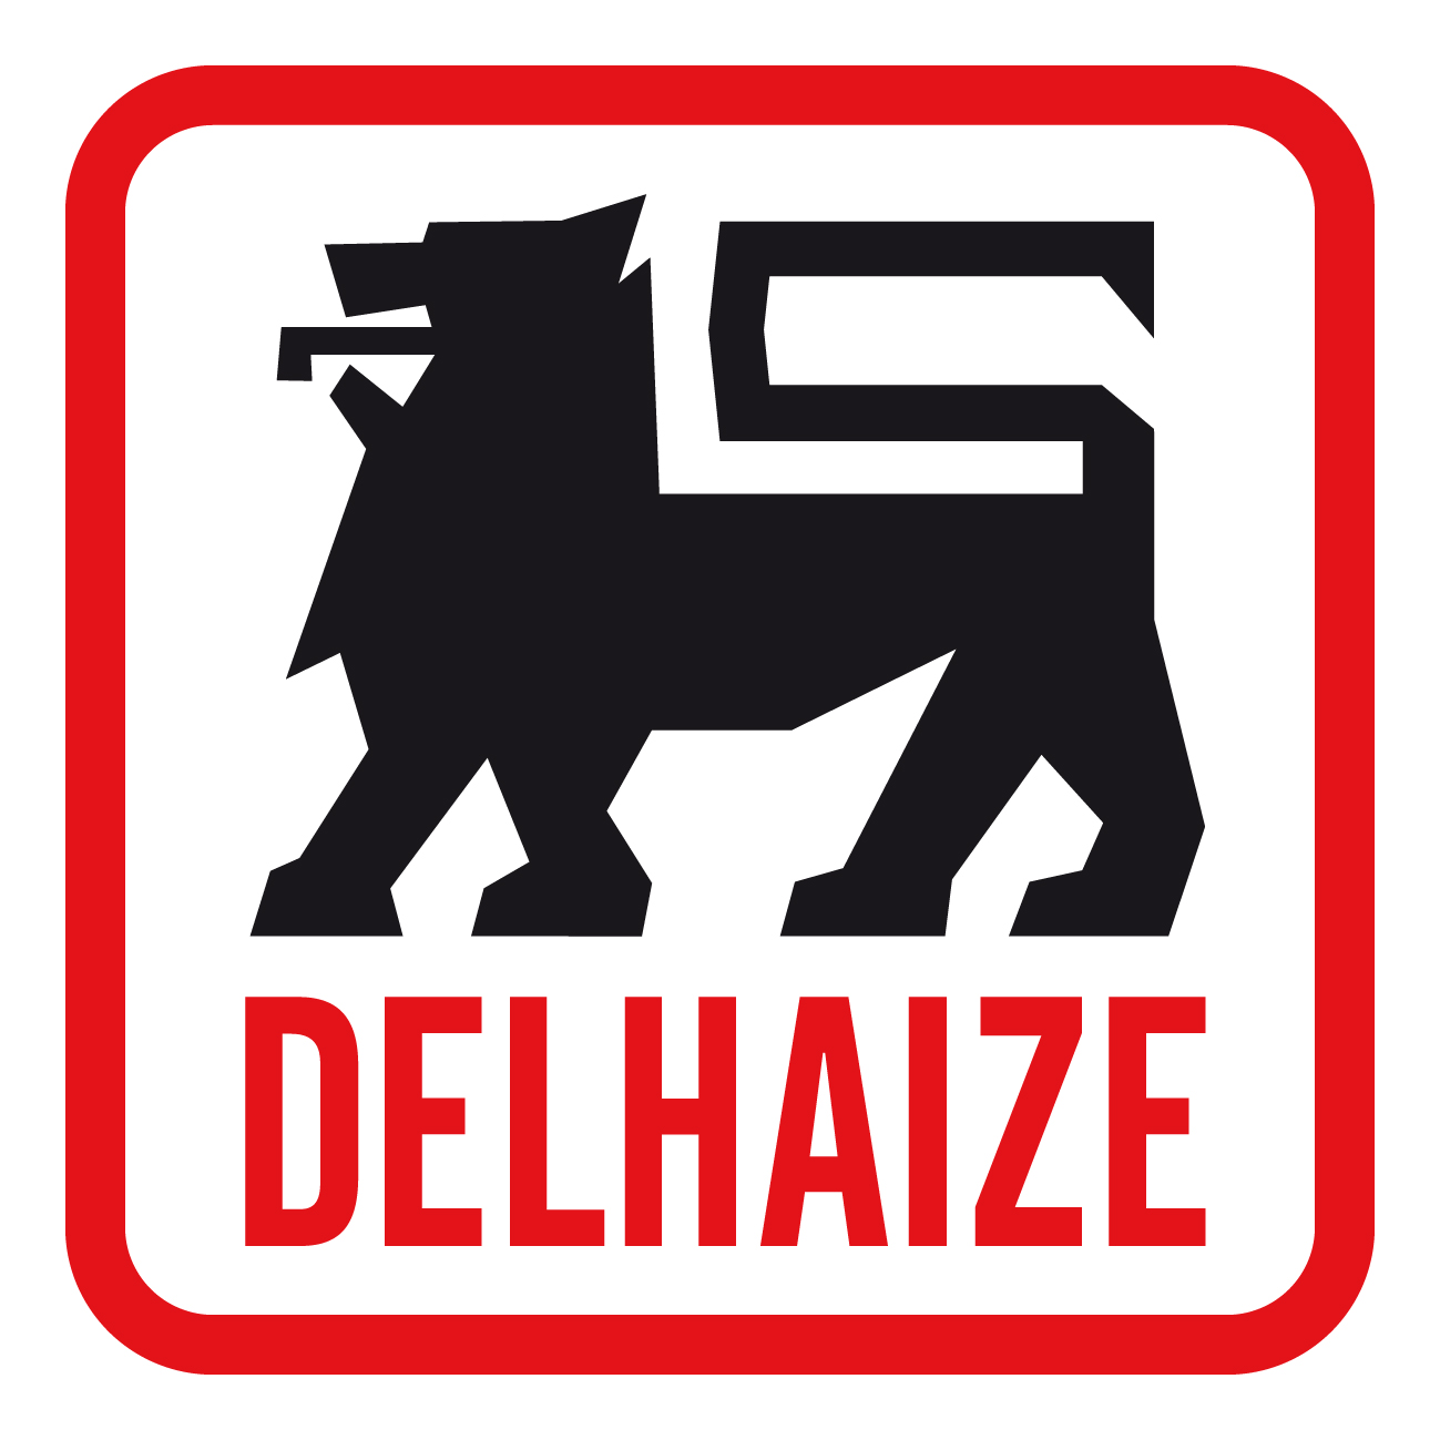 Delhaize kondigt tweede reeks van 17 supermarkten in eigen beheer aan die overgenomen zullen worden door zelfstandige uitbaters